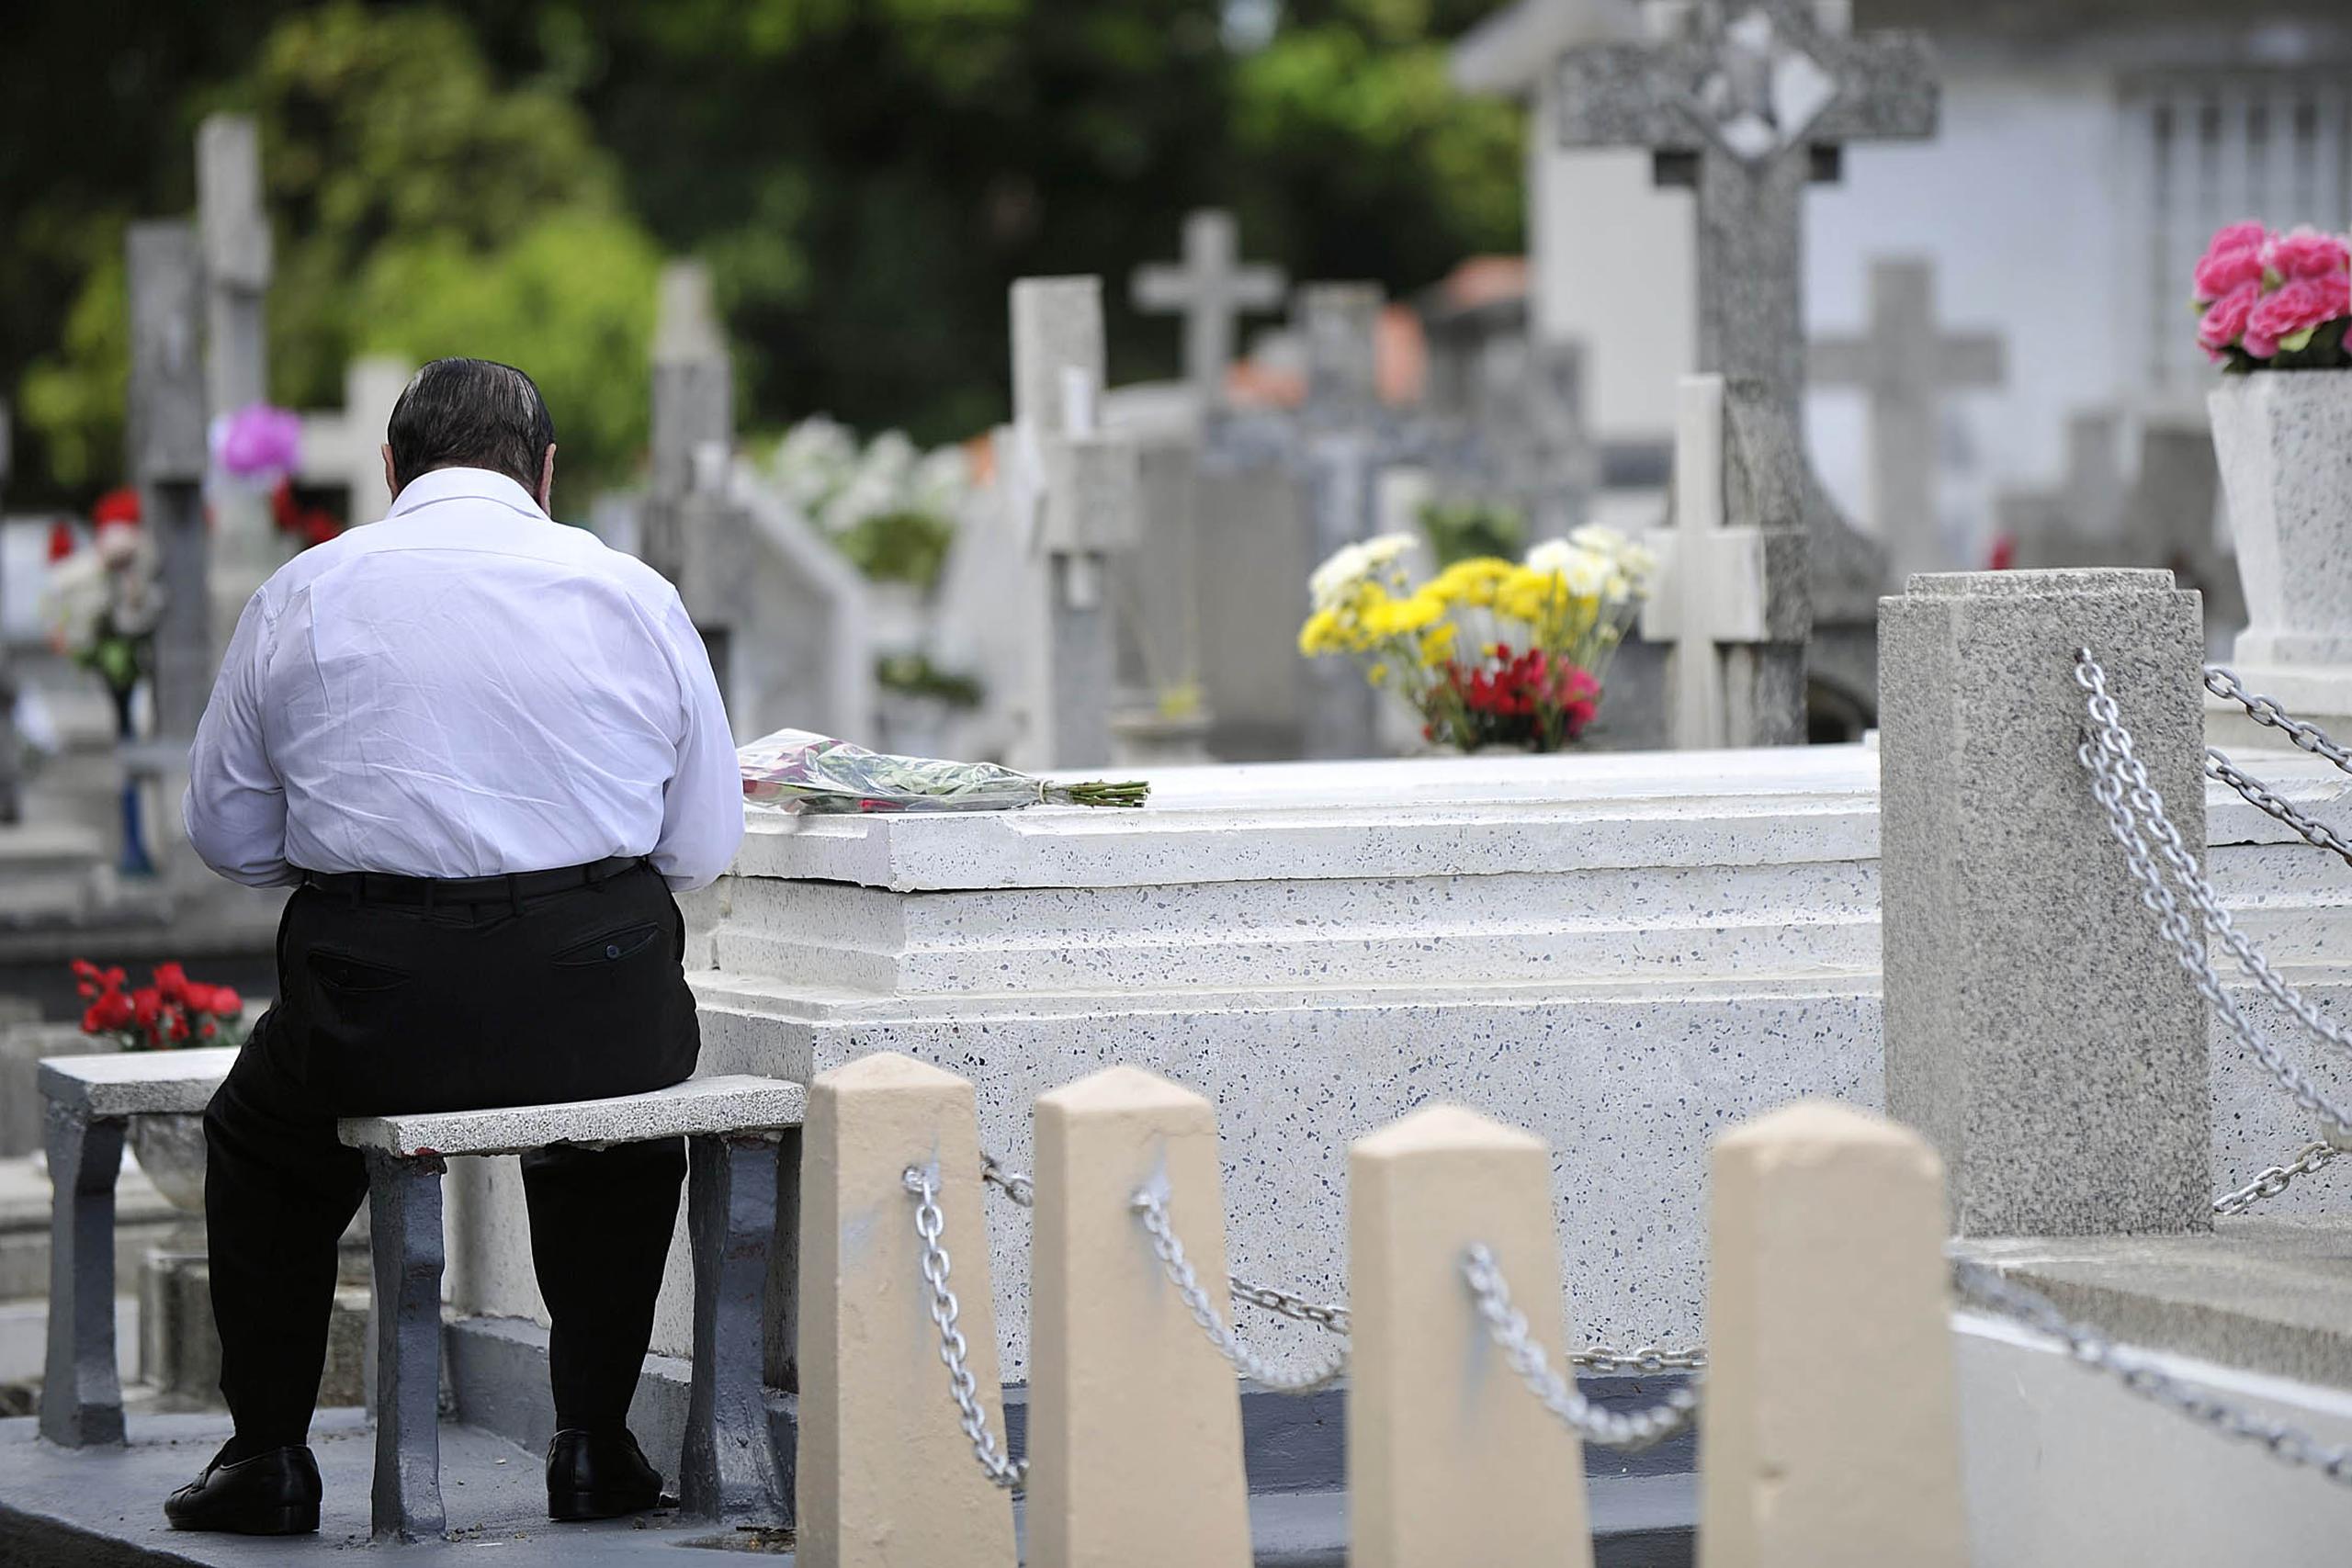 Los visitantes podrán estar el cementerio por espacio de 30 minutos, evitando tertulias o congregación de personas.